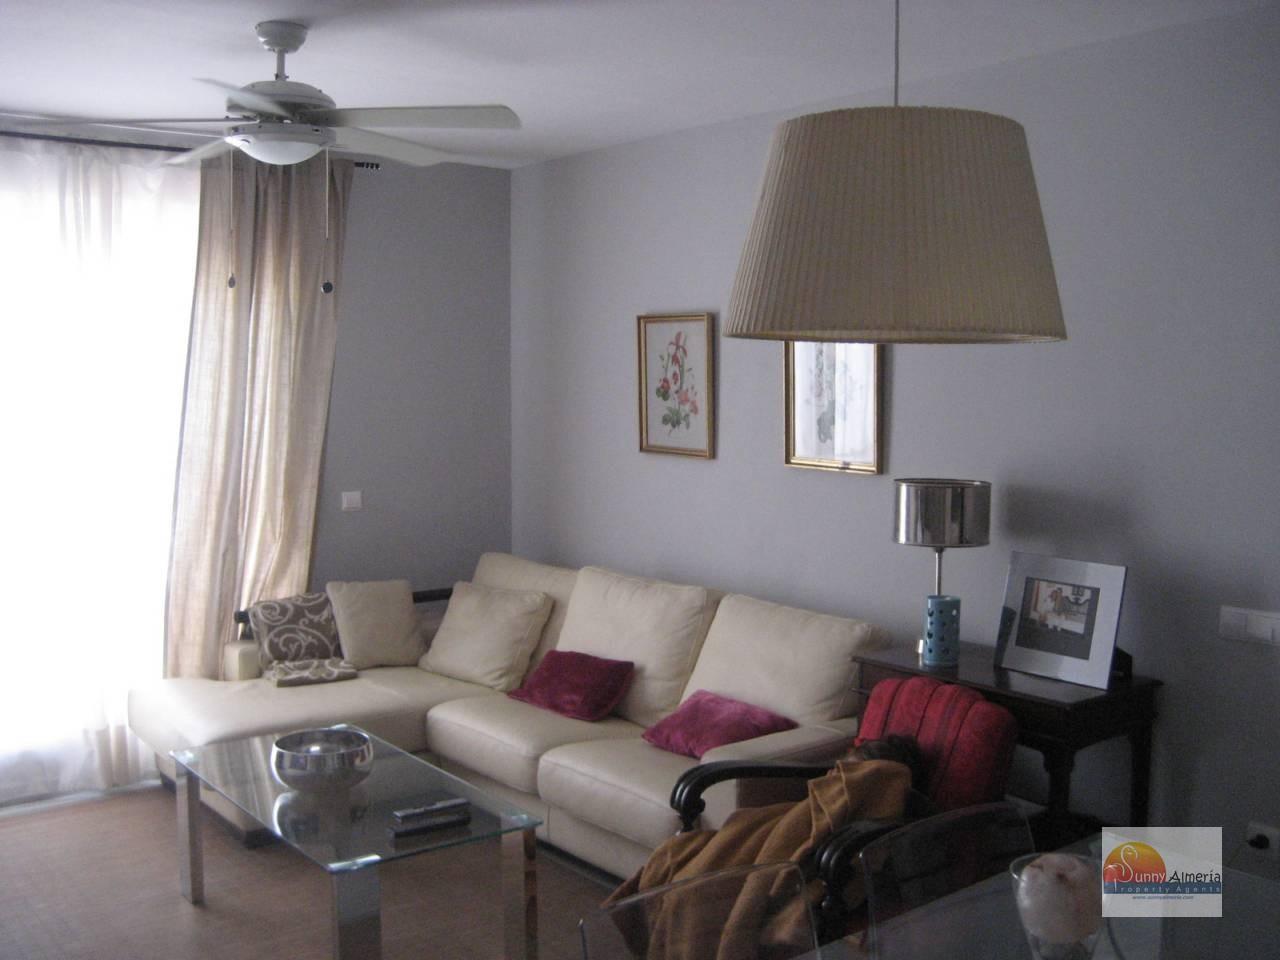 Apartment for sale in av rosita ferrer 4 (Roquetas de Mar), 135.000 €